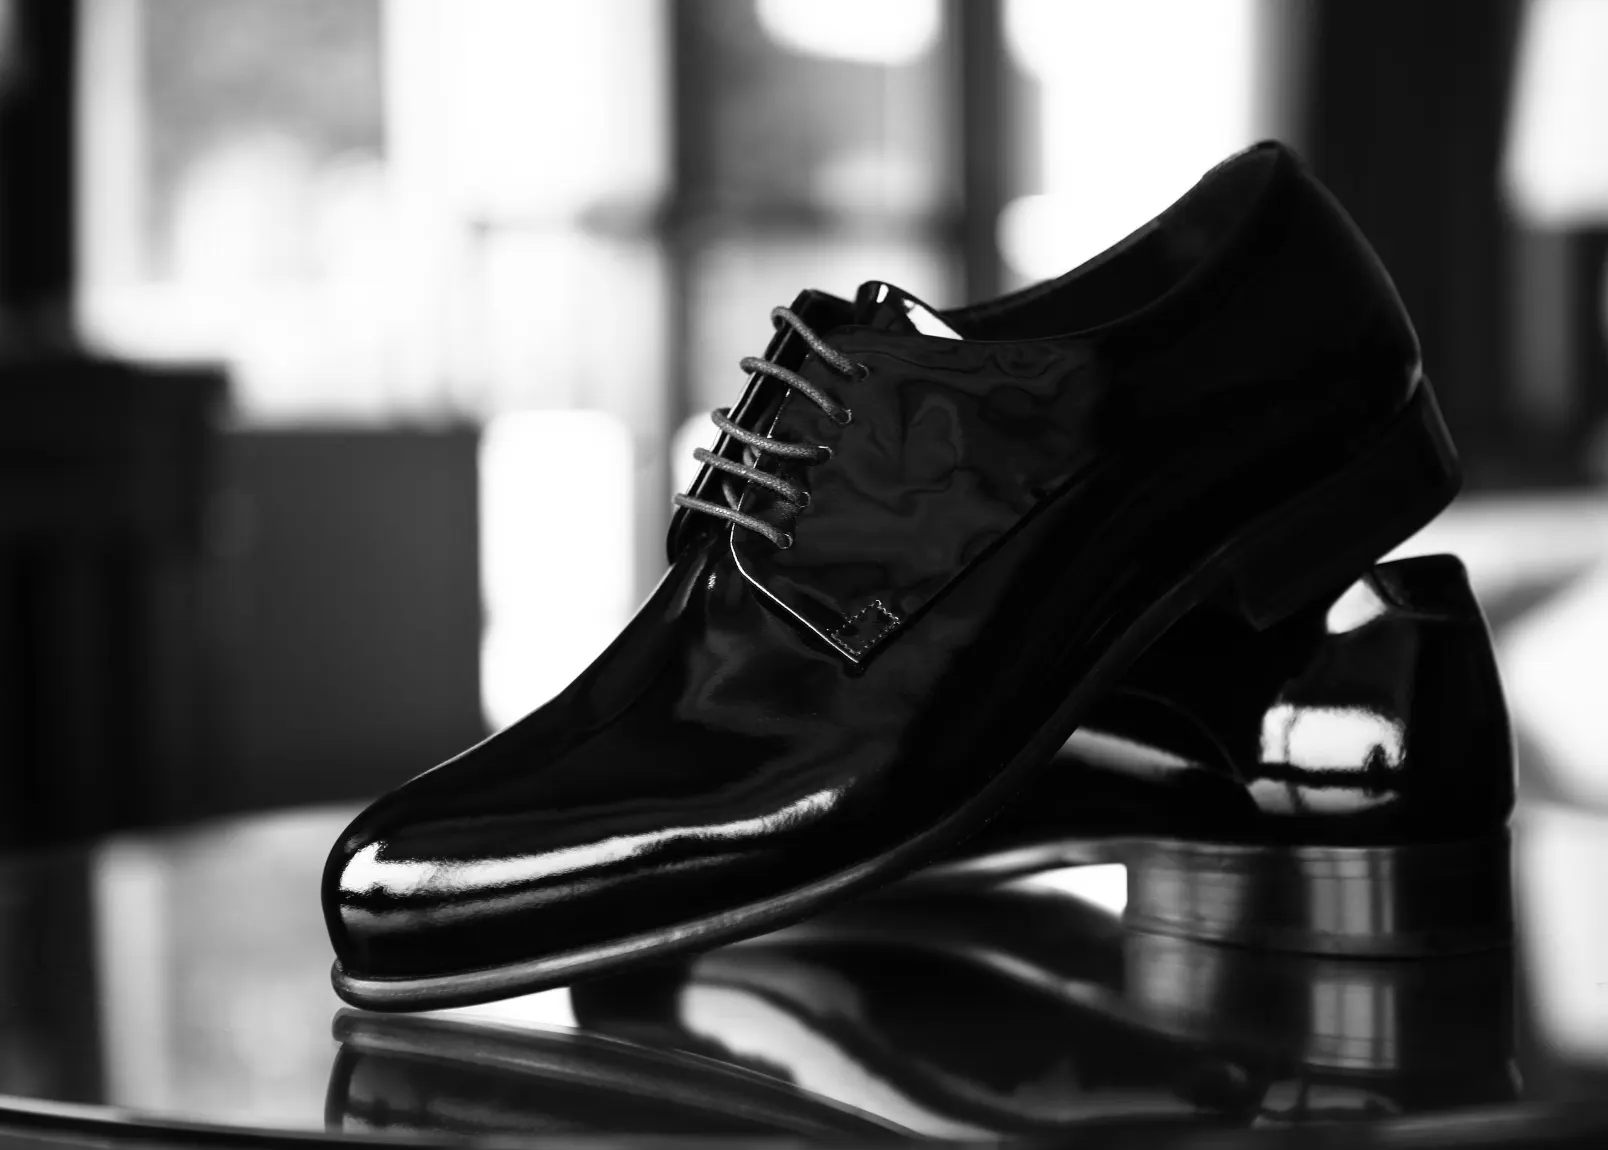 Izaberite svoj stil - pročitajte maš članak o tome kako da izaberete muške elegantne cipele sa stilom i pobrinete se da budete u trendu.